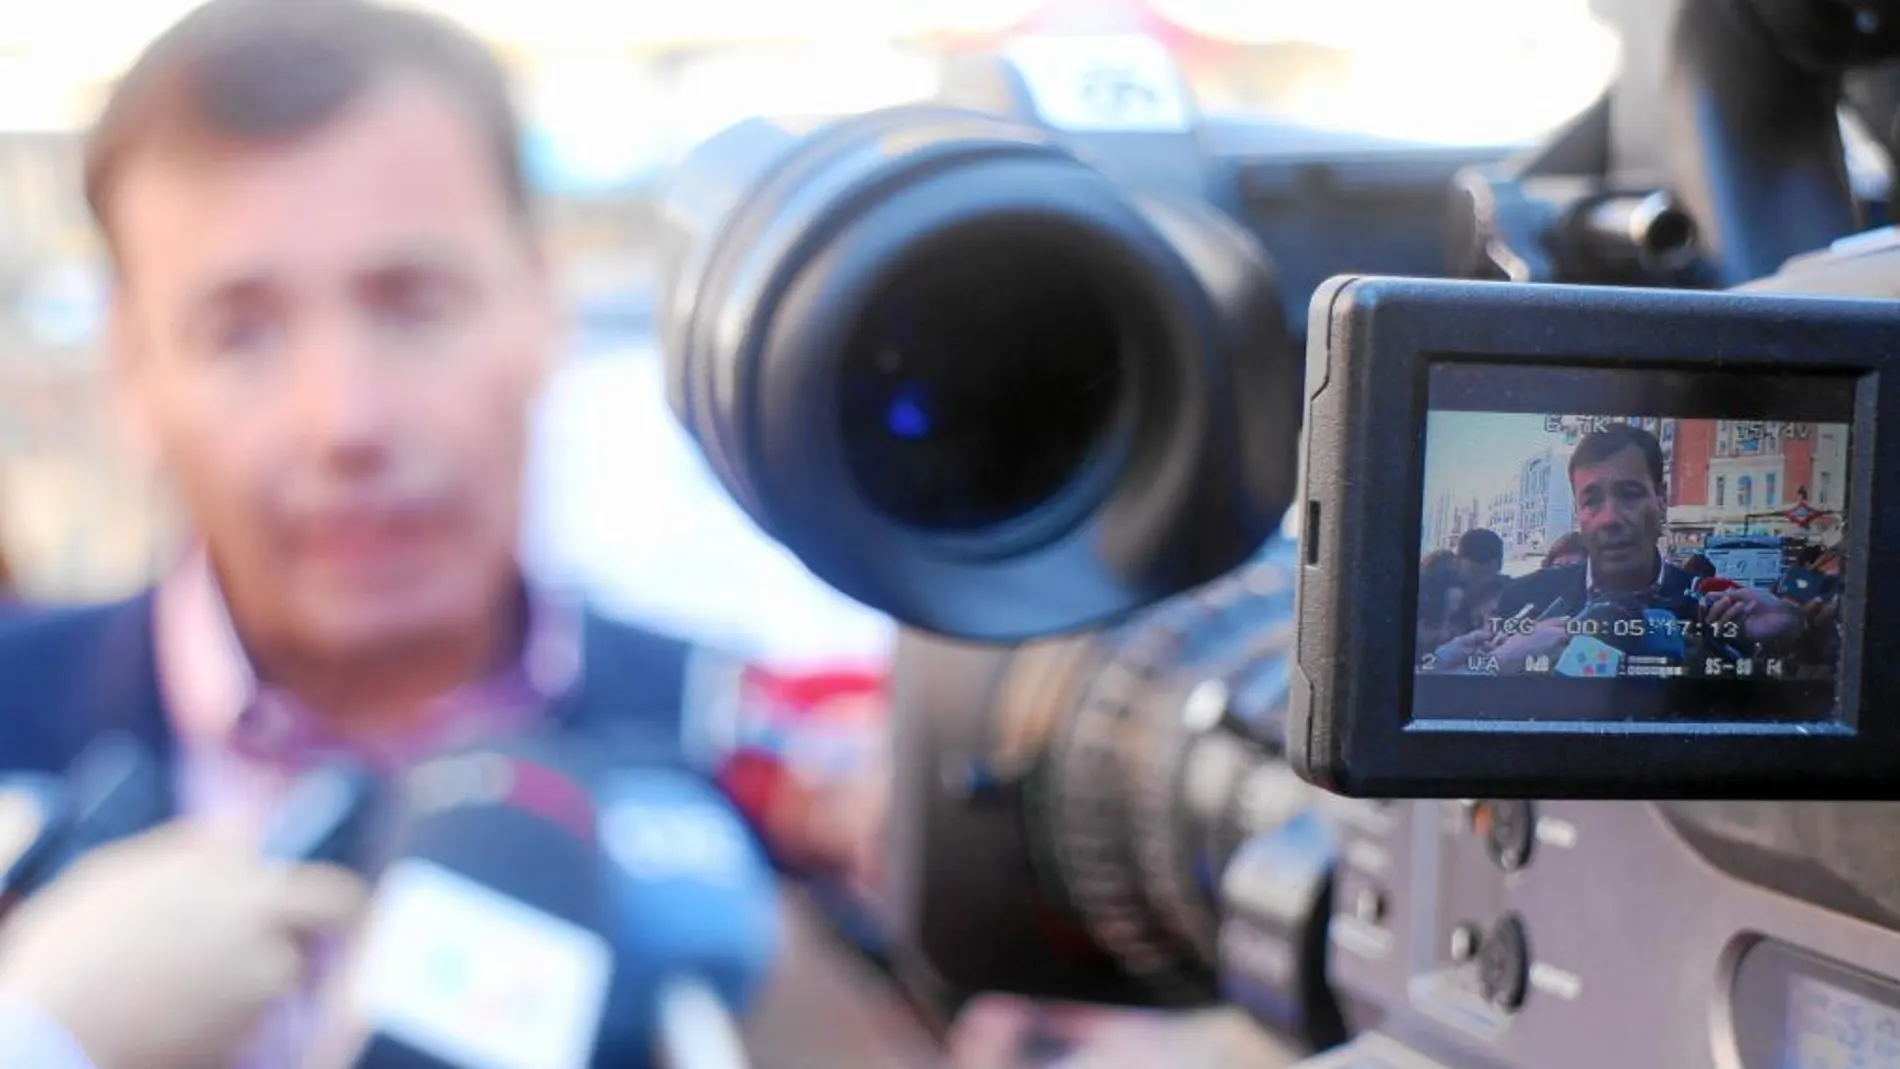 Gómez, en la imagen en la consulta sanitaria de mayo, ofreció una rueda de prensa para informar sobre el burofax, apuntan los denunciantes